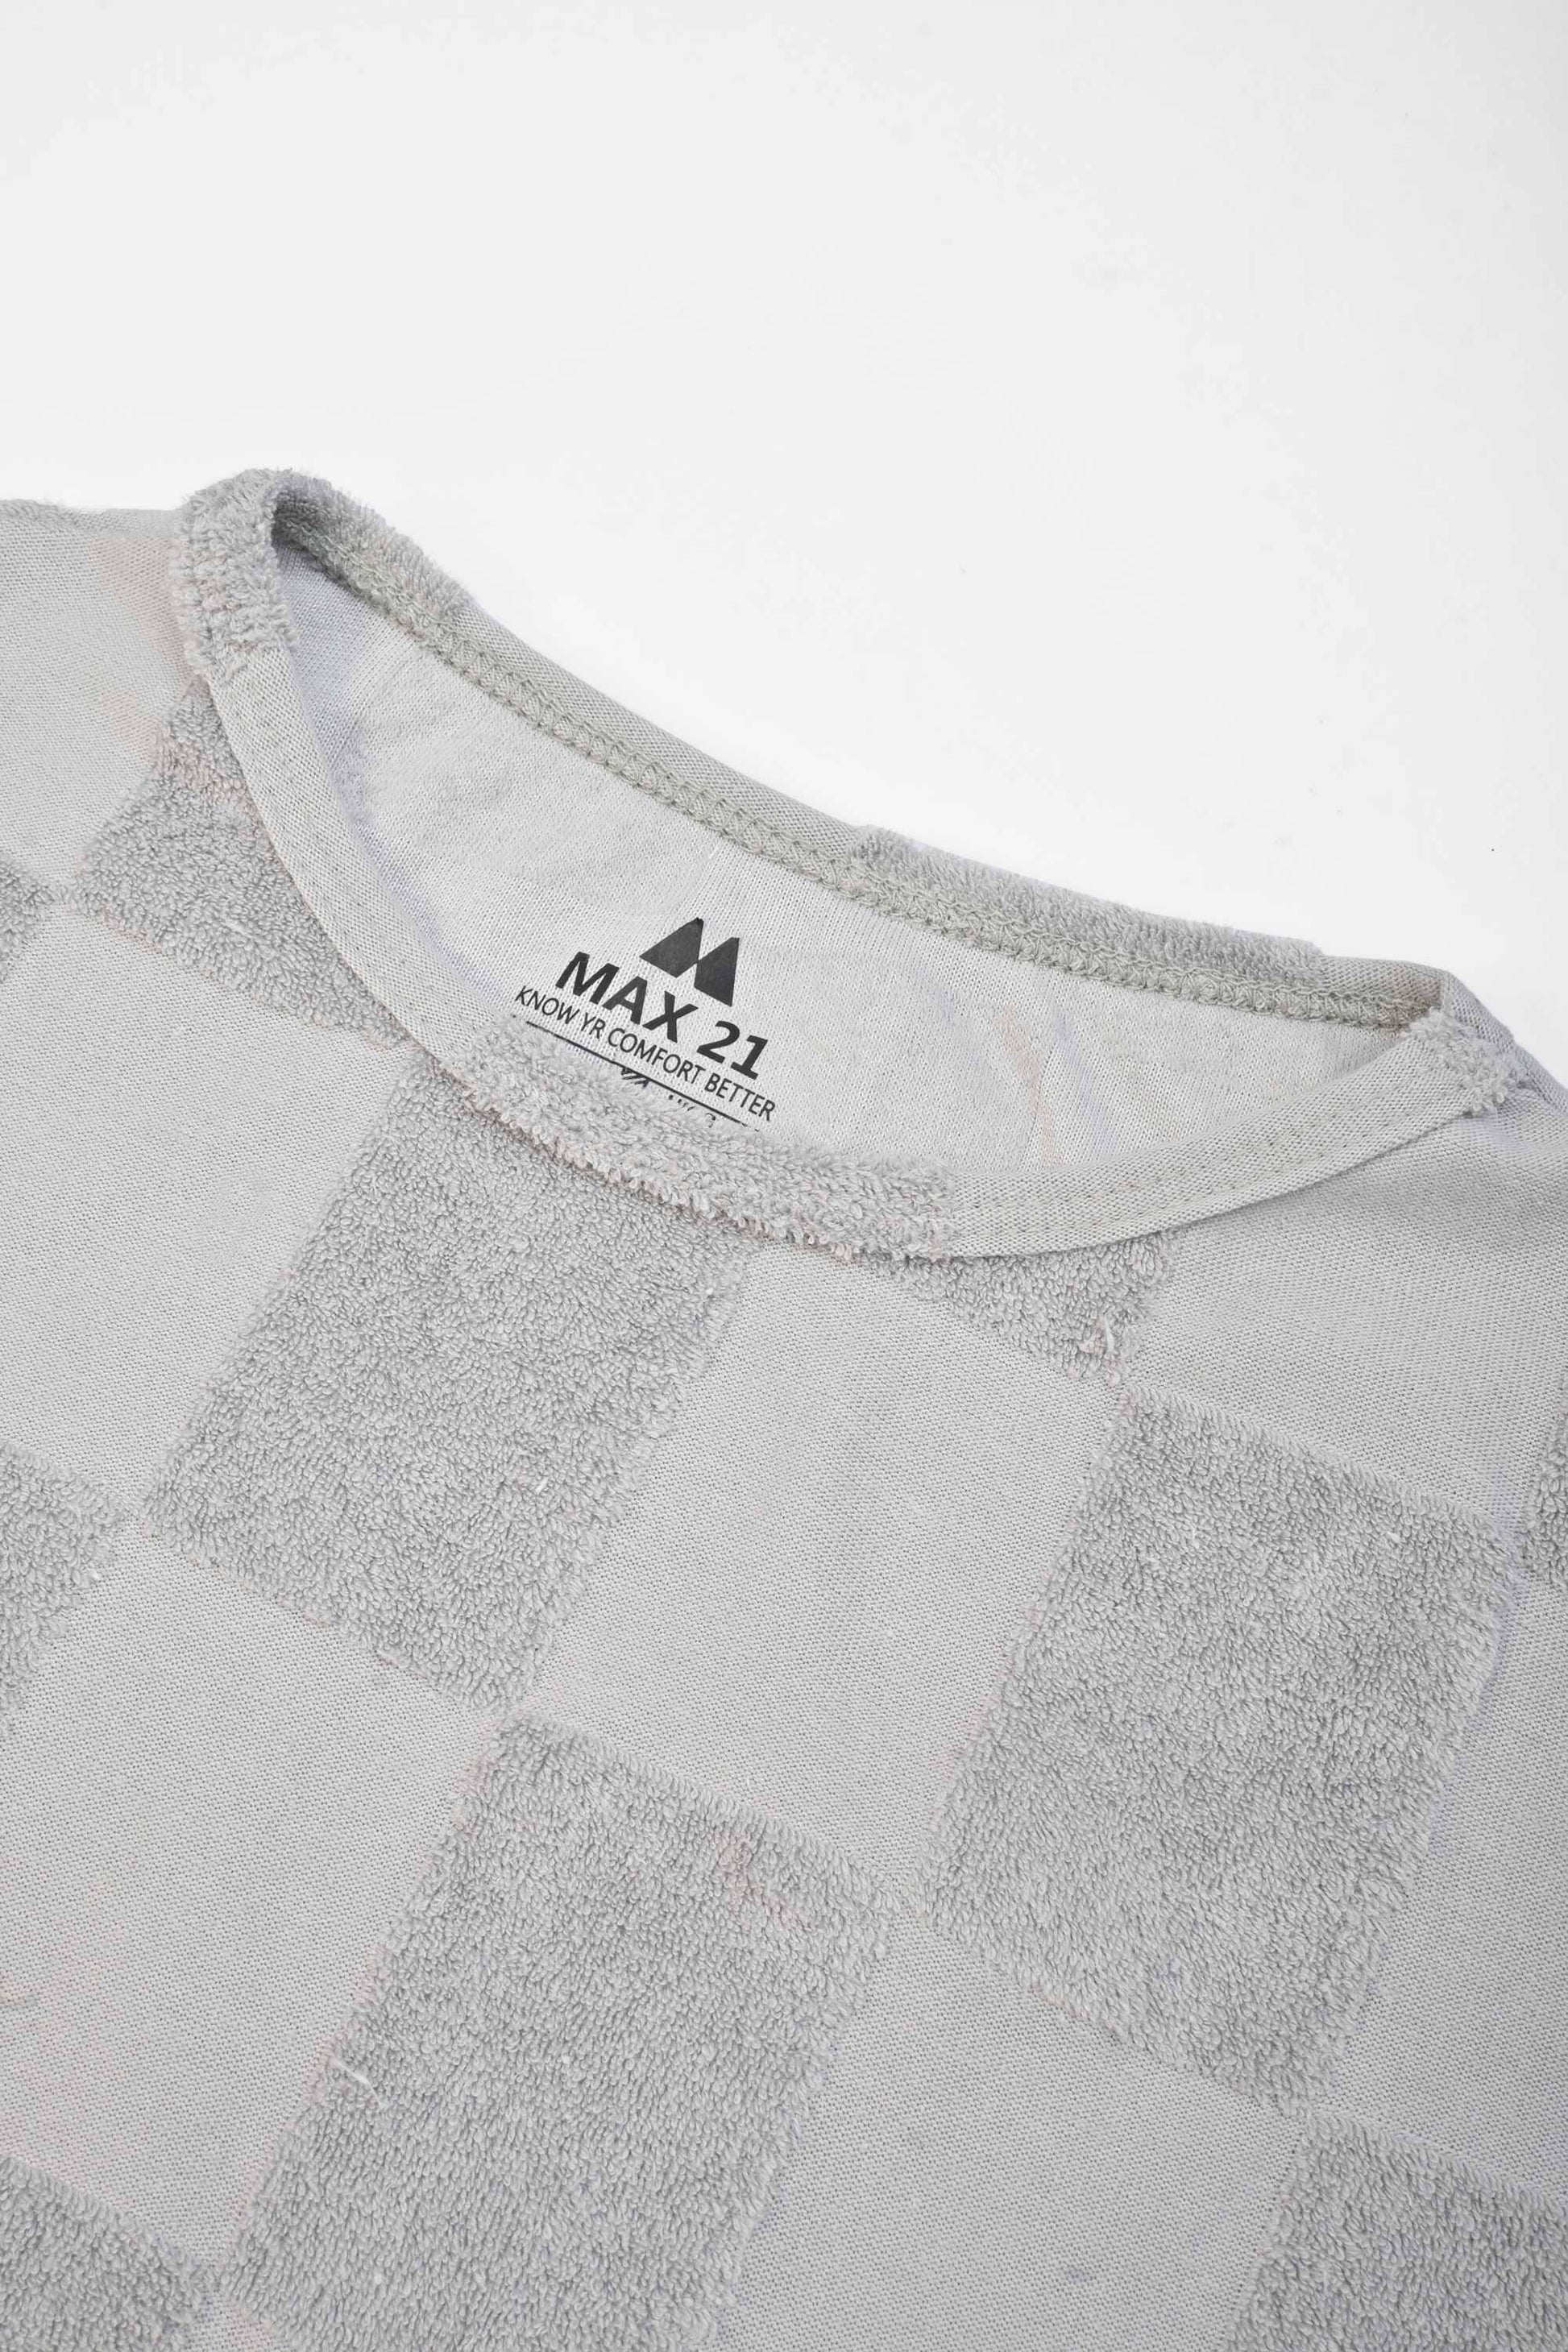 Max 21 Women's Bilbeis Design Short Sleeve Tee Shirt